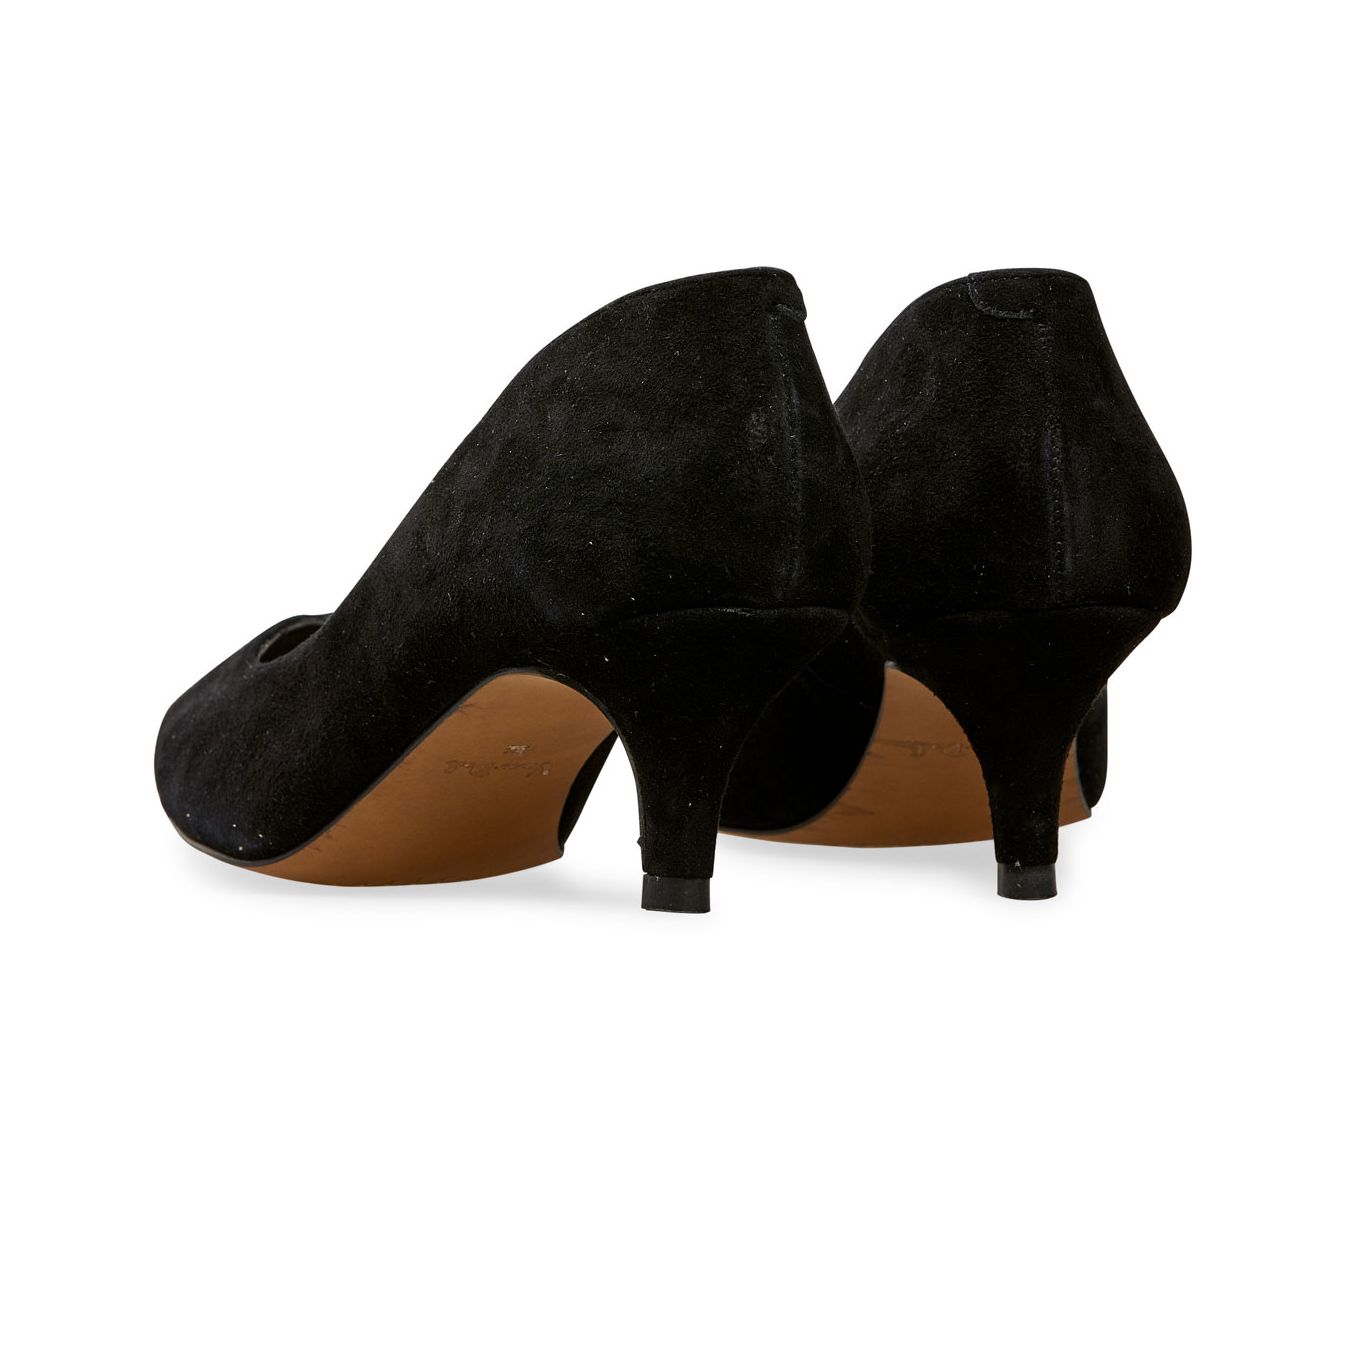 Van Dal Shoes - Nina Kitten Heel Court Shoes in Black Suede